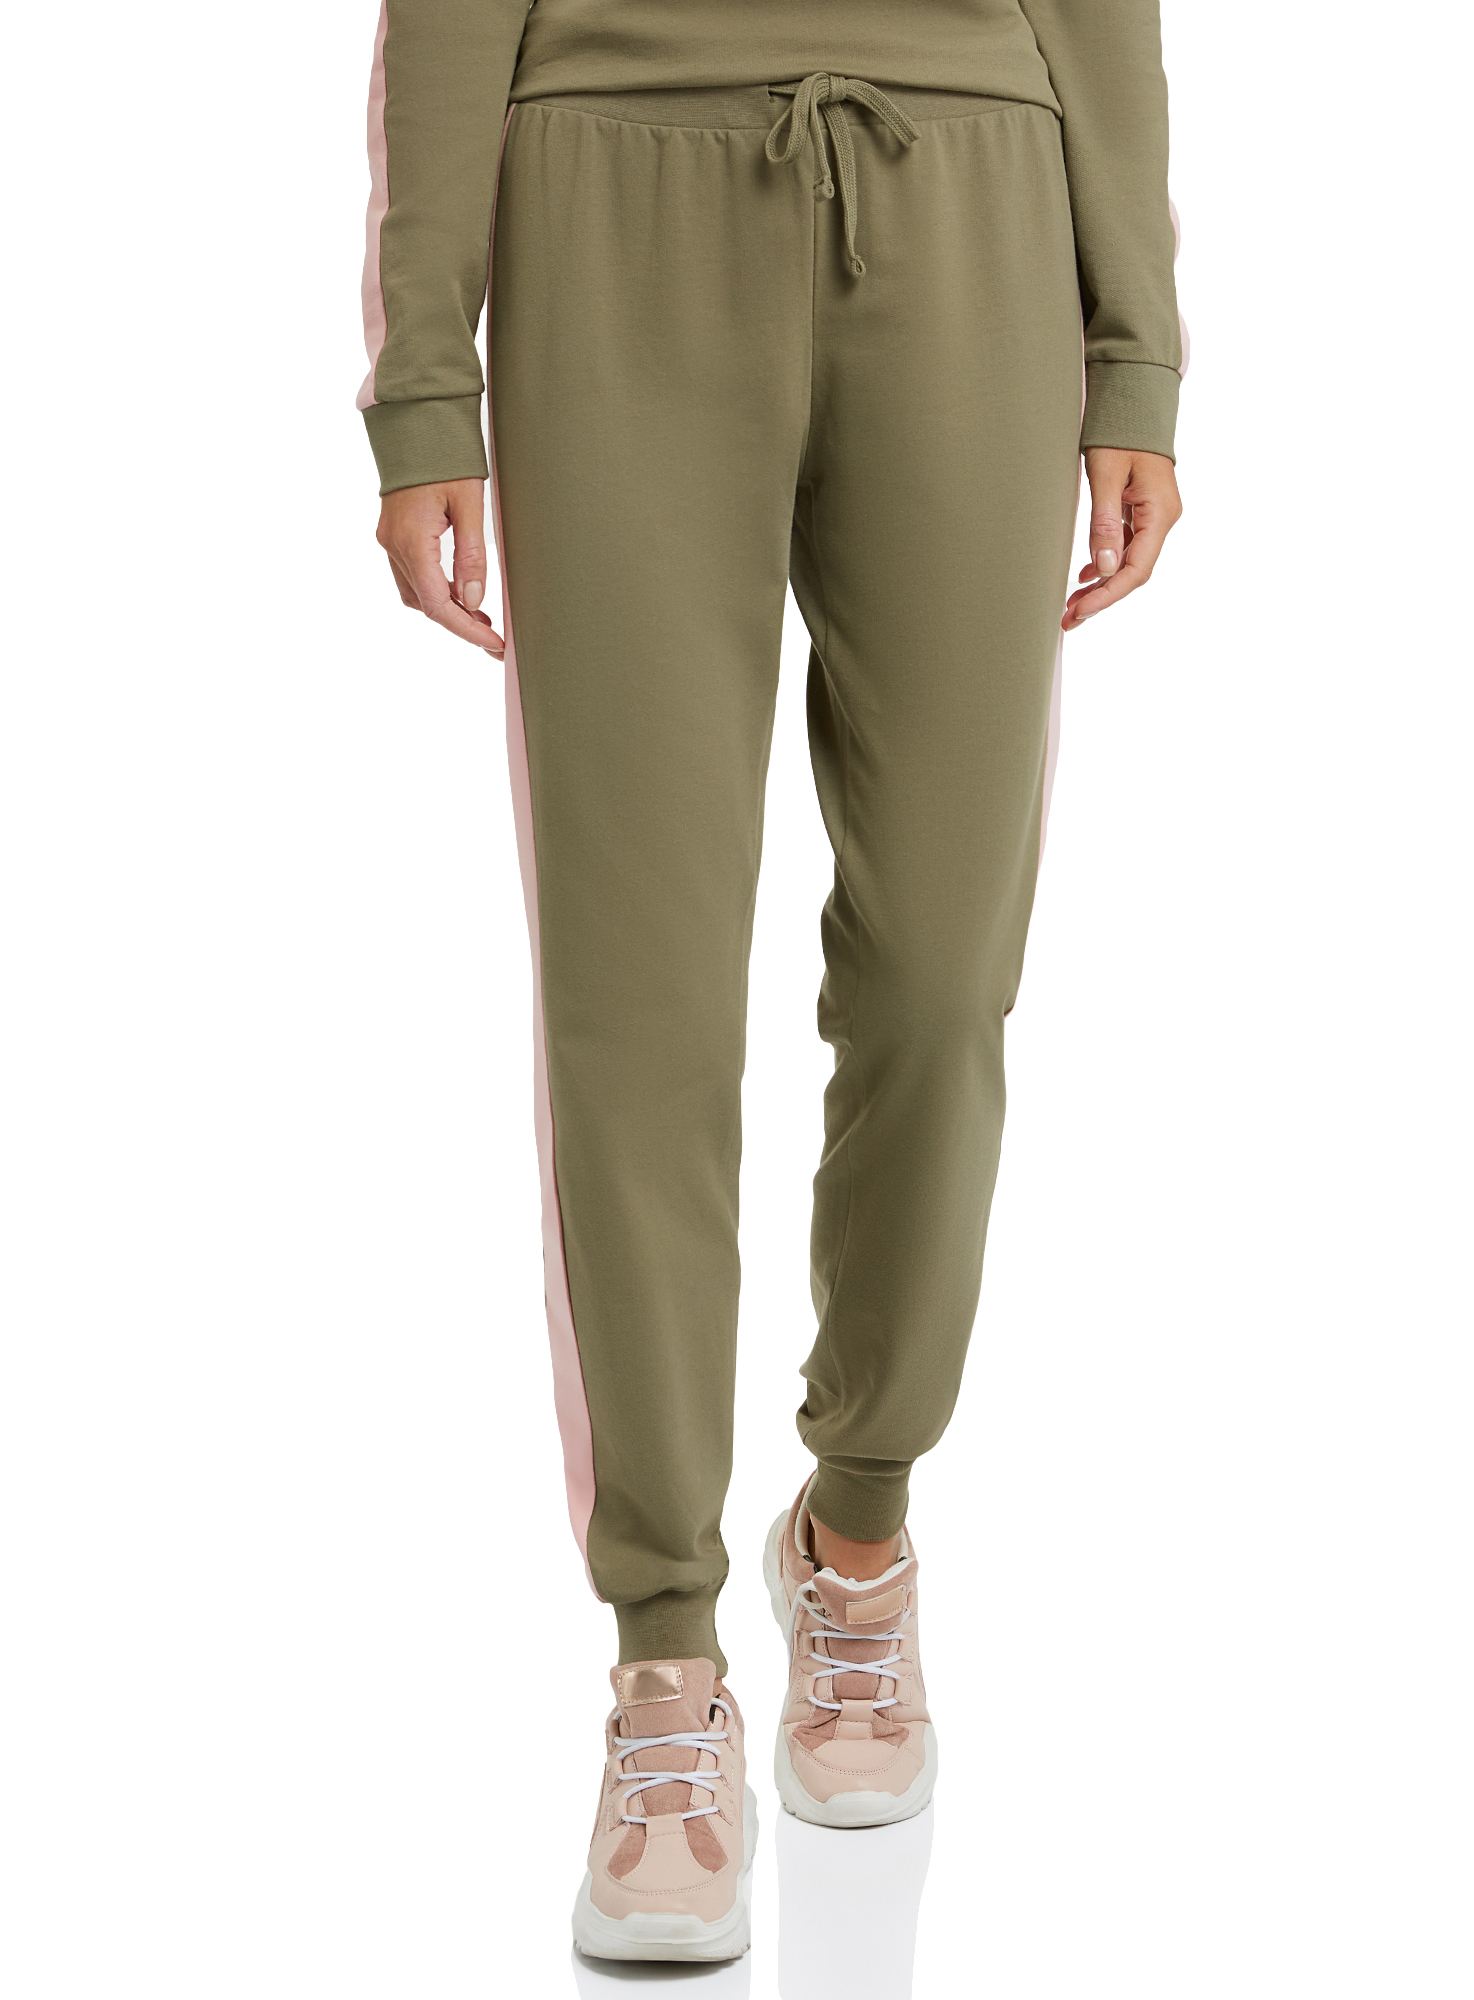 Спортивные брюки женские oodji 16701097B зеленые S